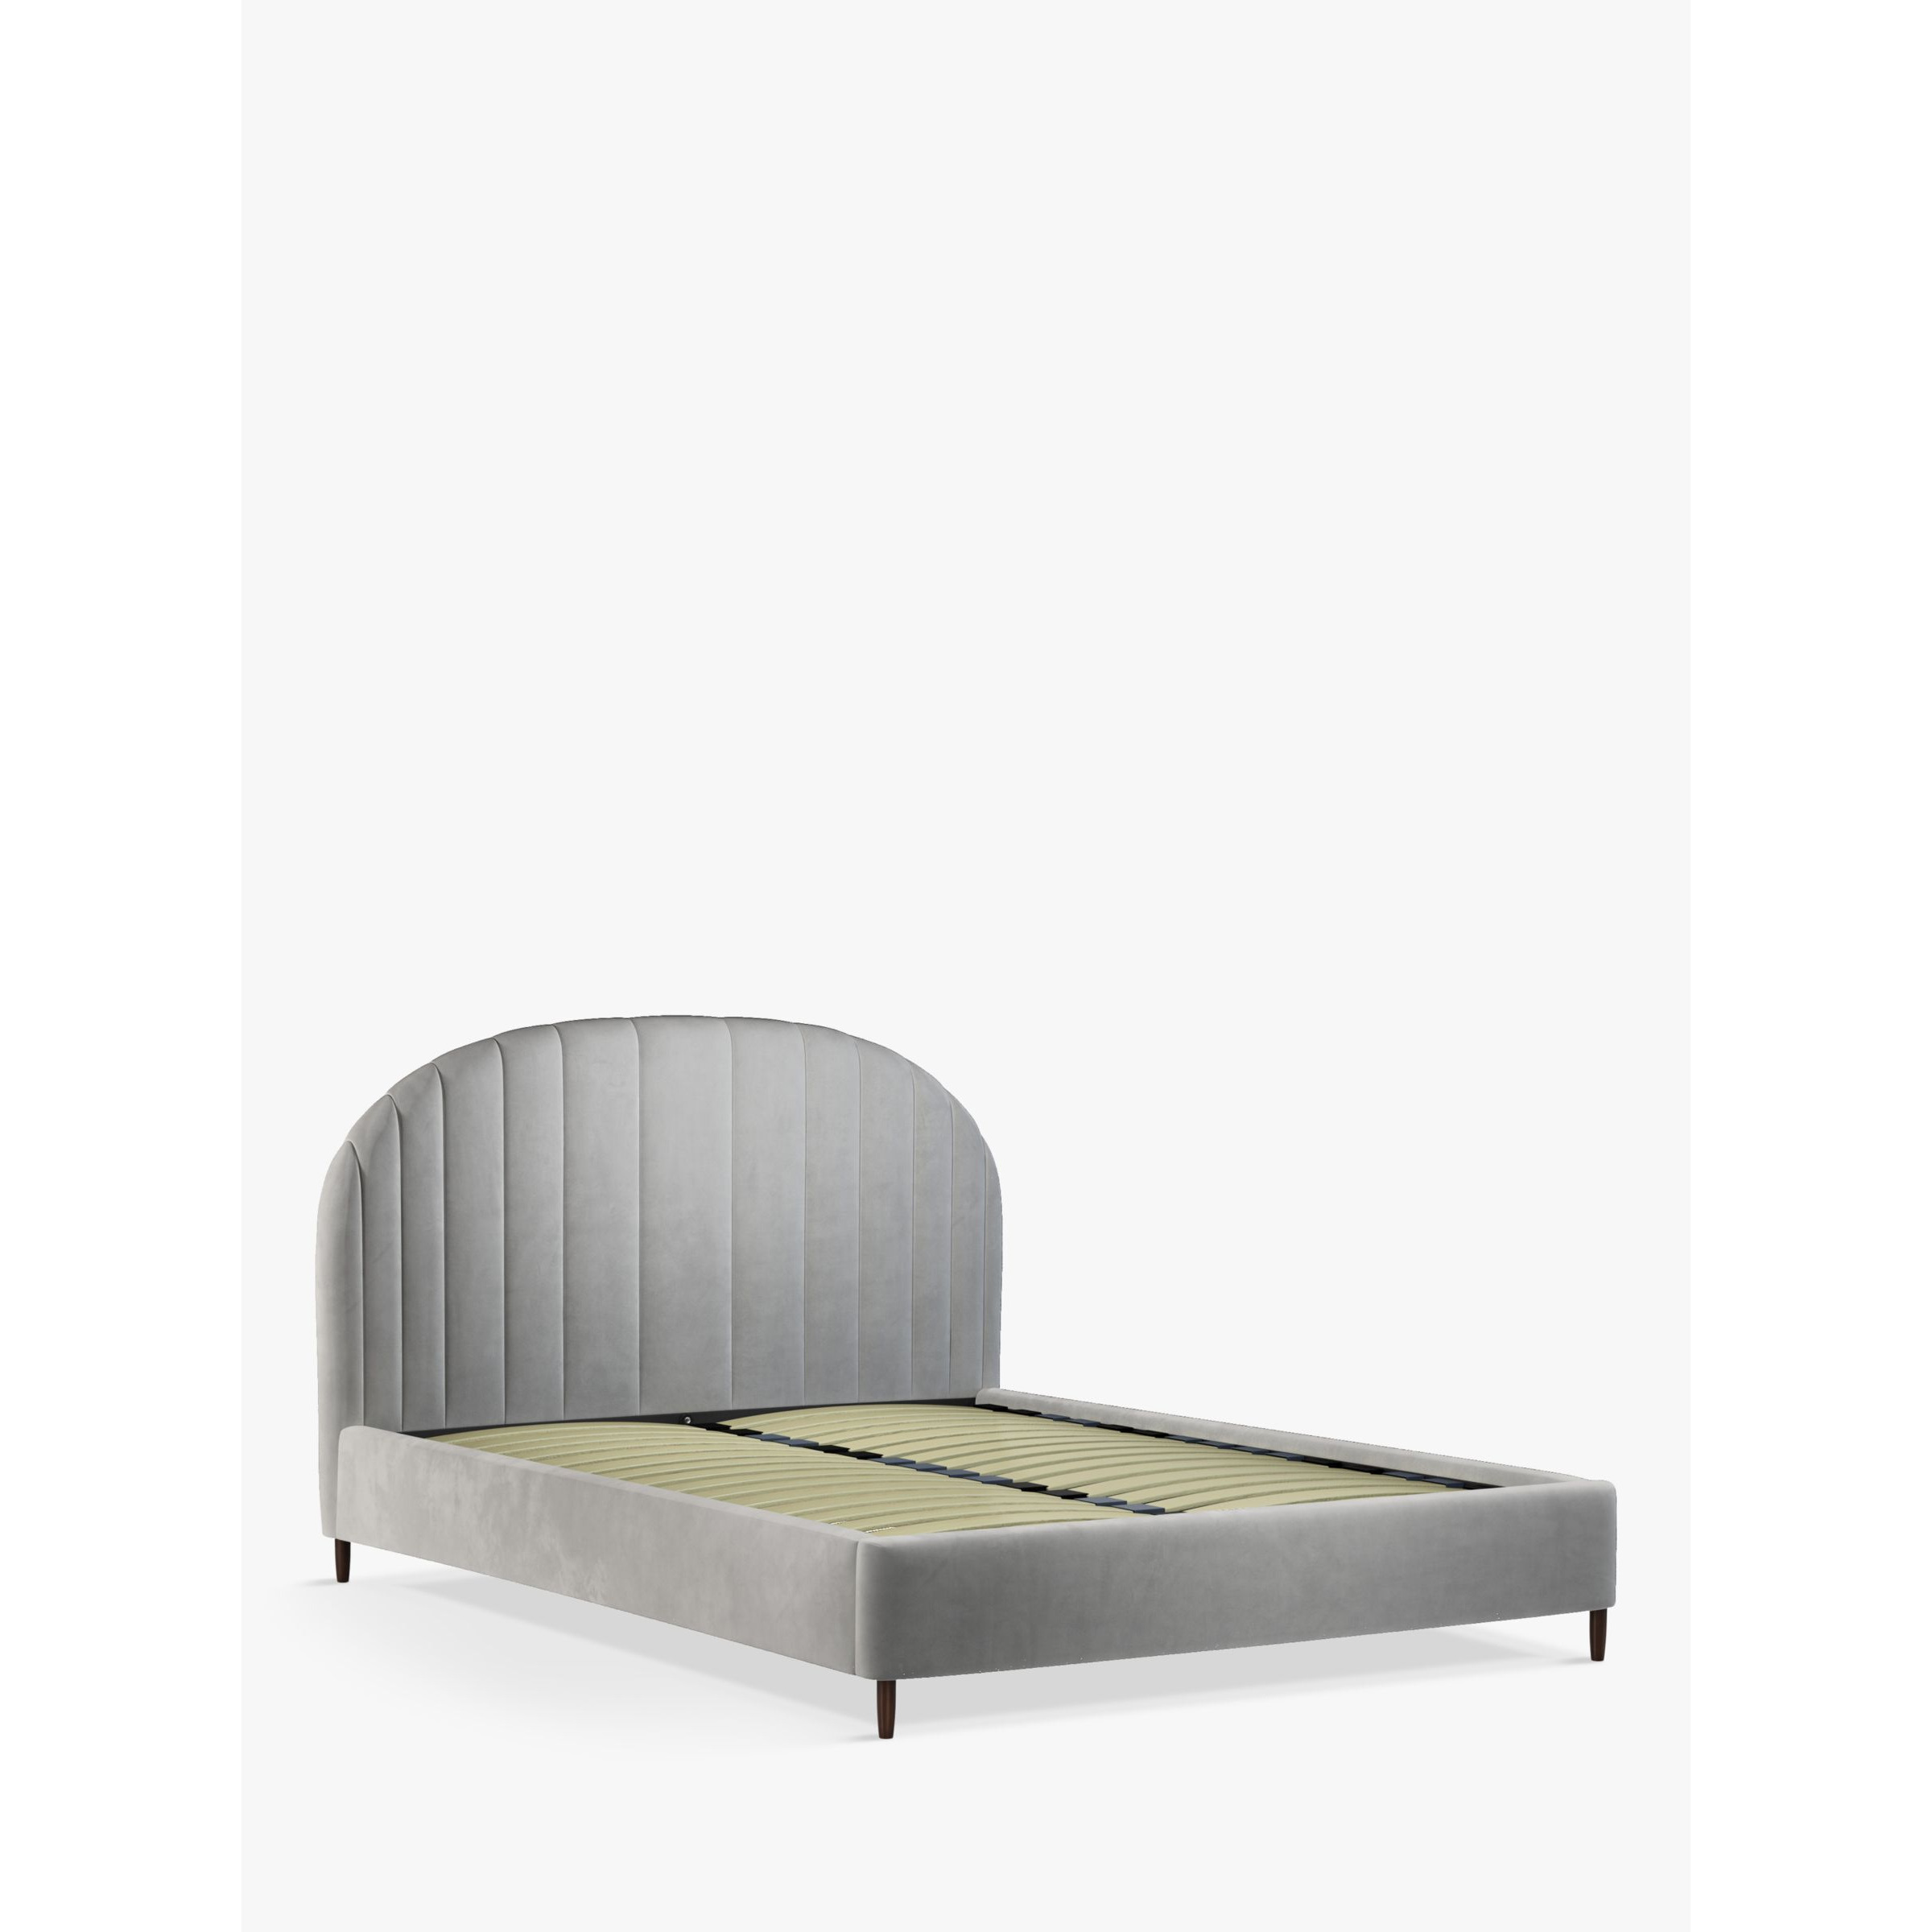 John Lewis Gradient Upholstered Bed Frame, King Size - image 1